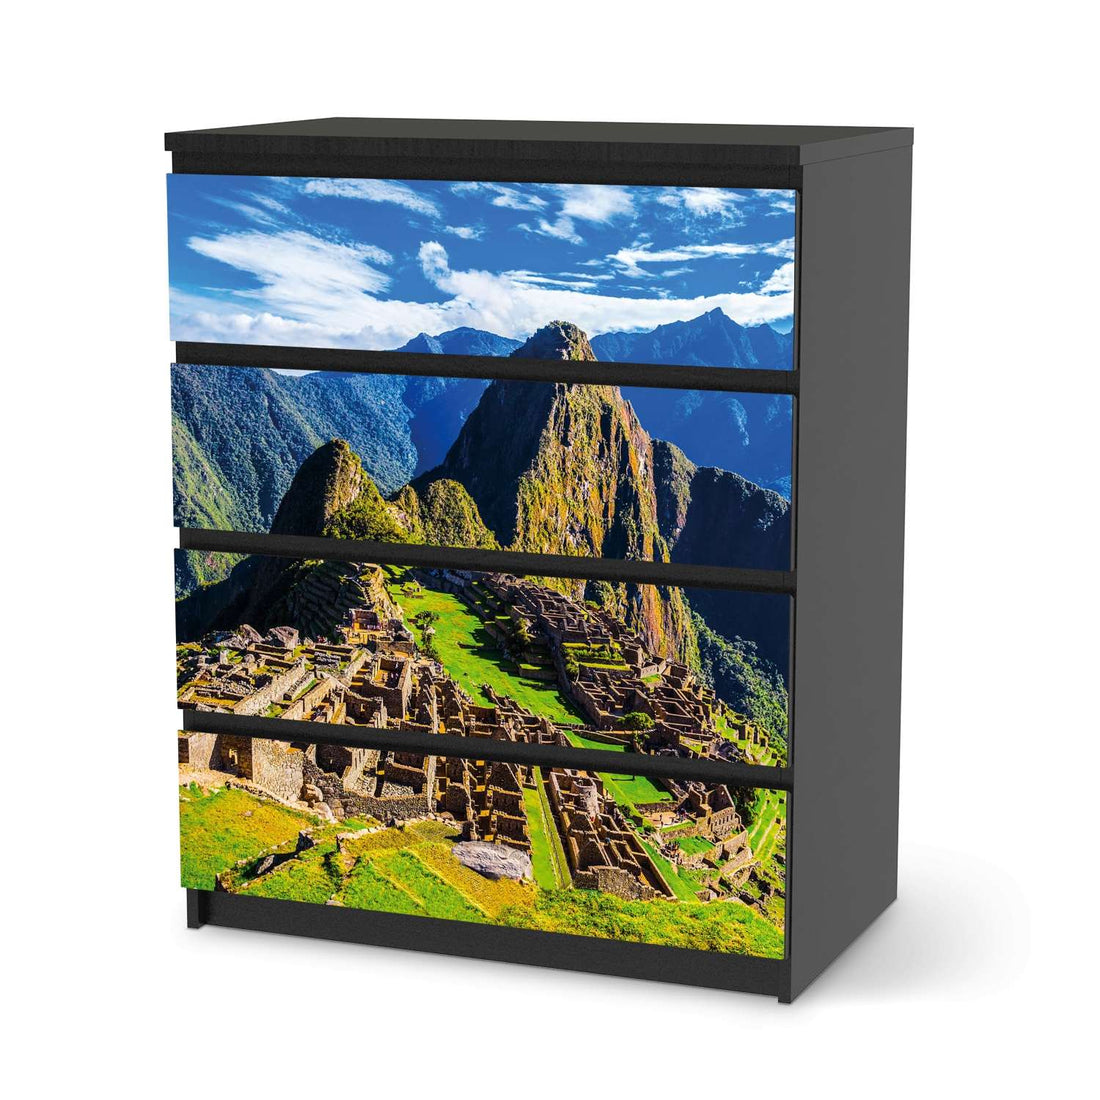 Folie für Möbel Machu Picchu - IKEA Malm Kommode 4 Schubladen - schwarz